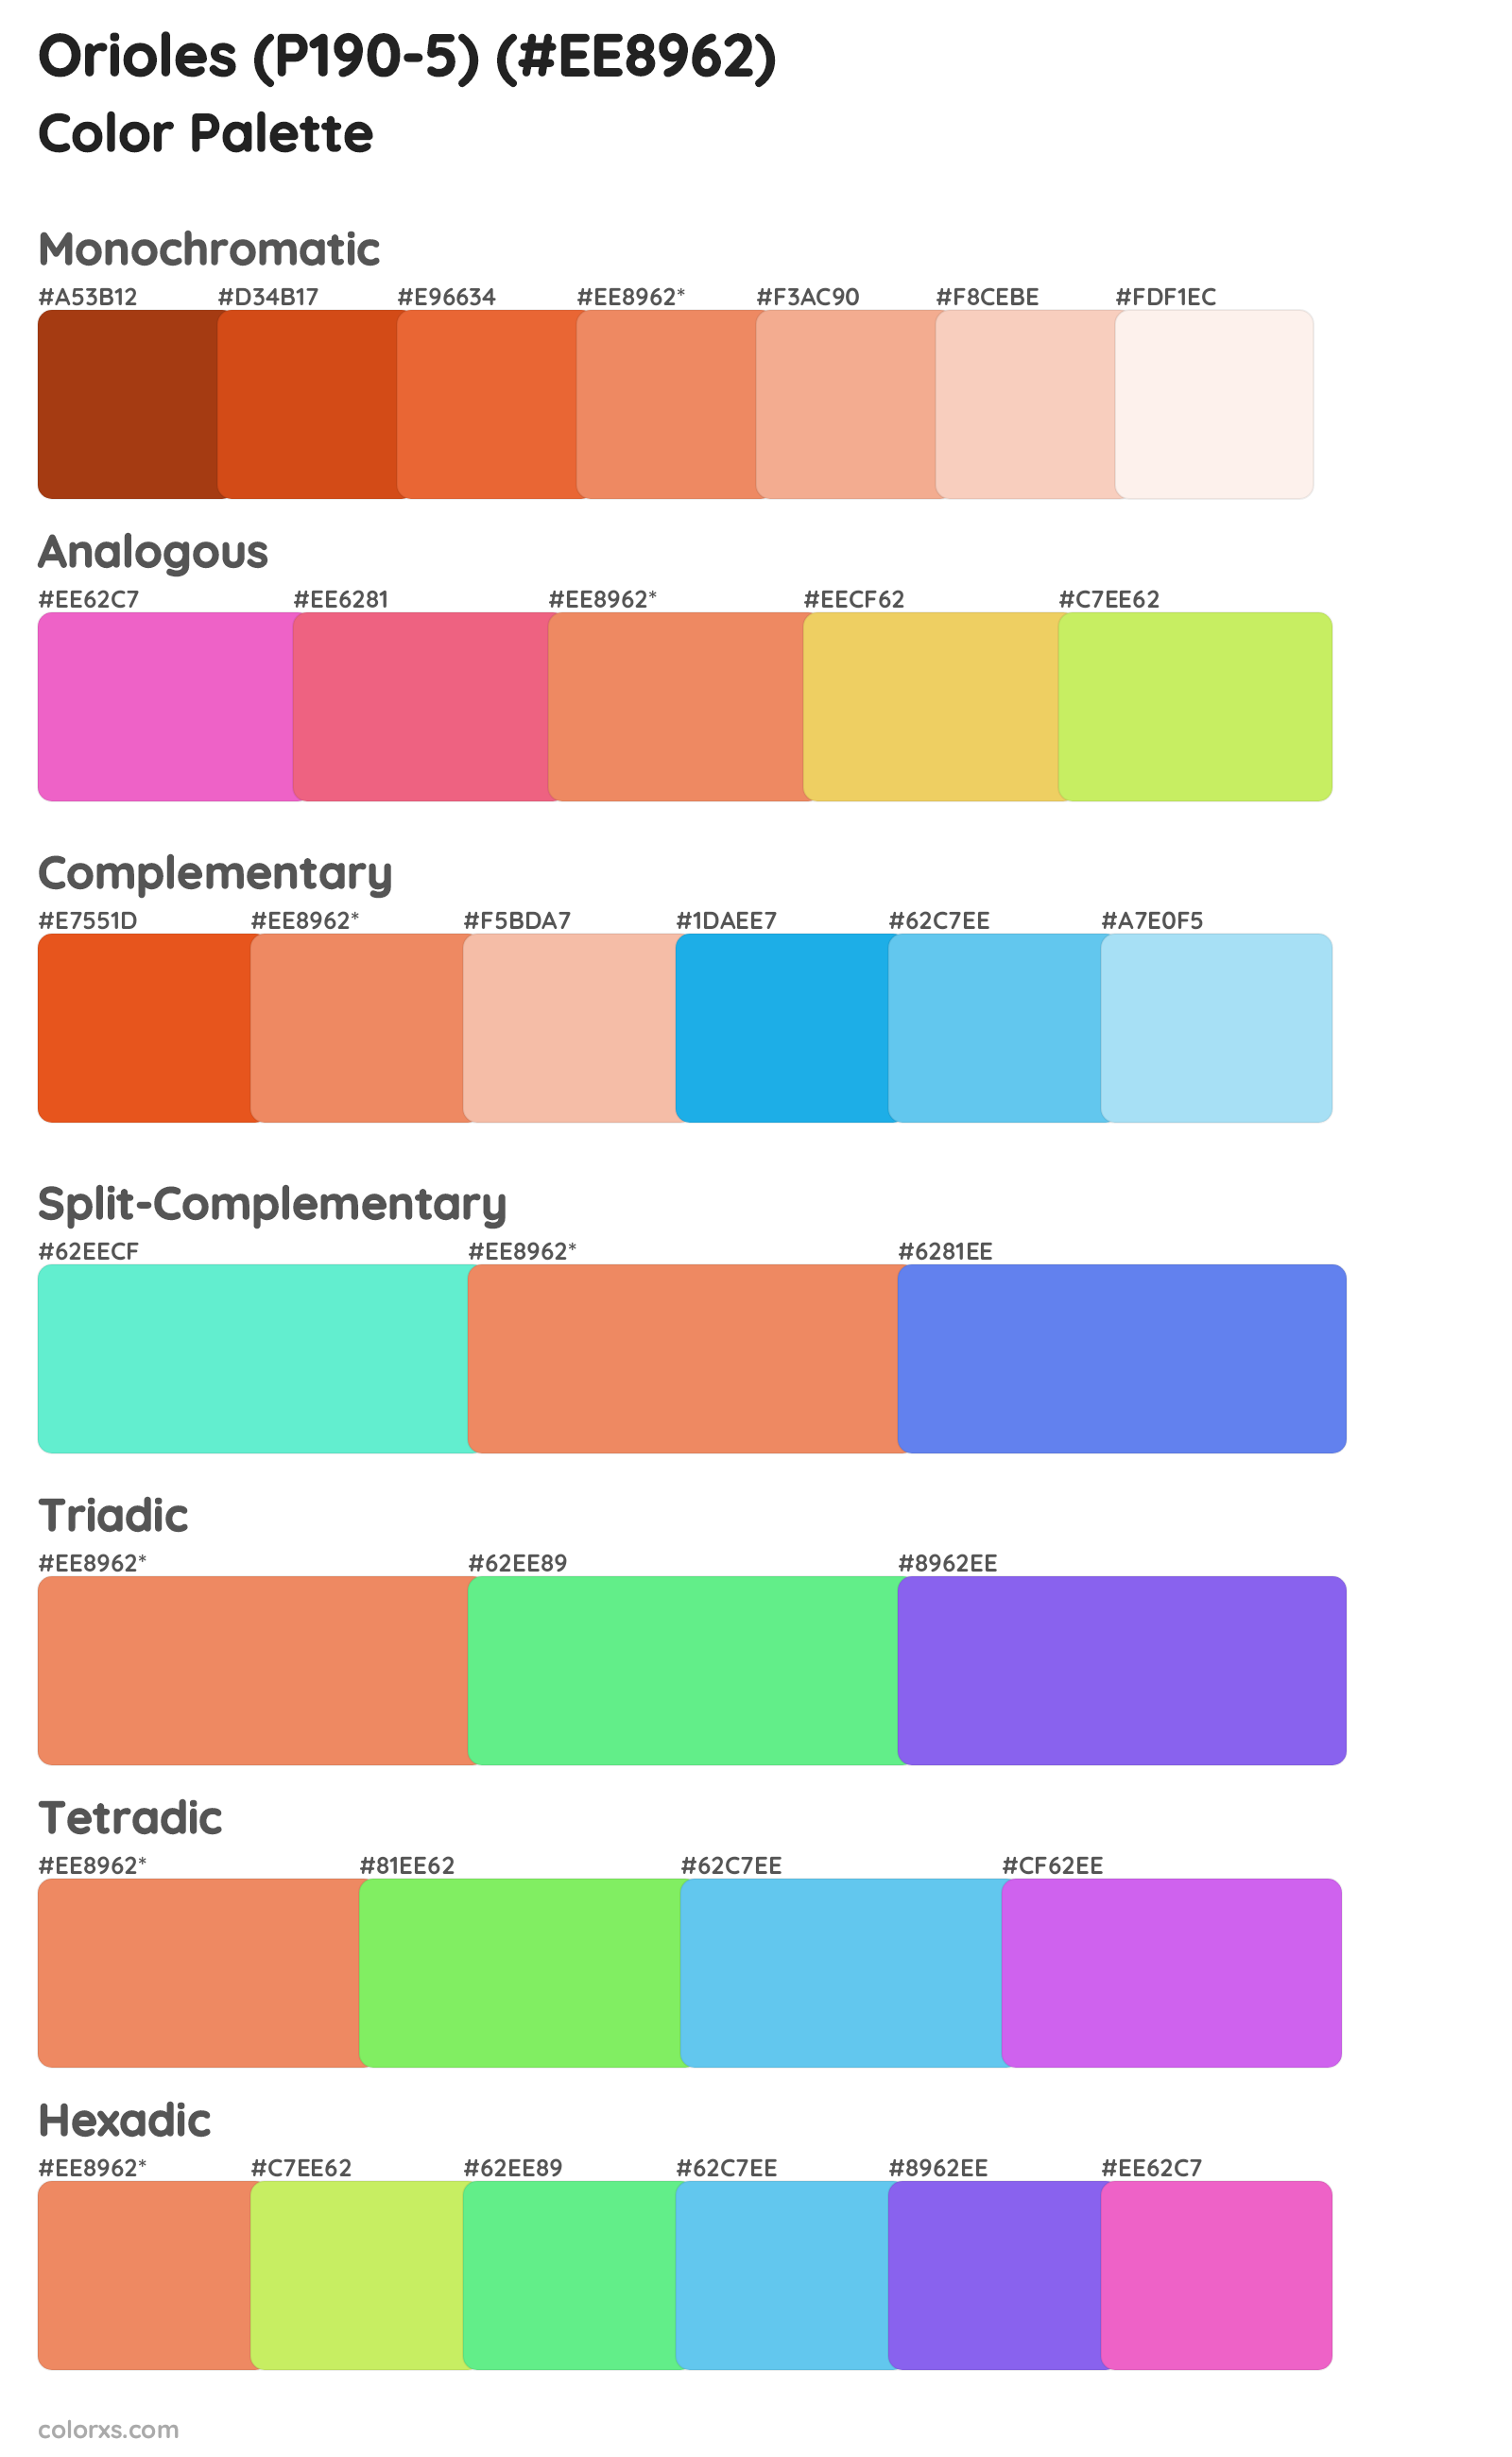 Orioles (P190-5) Color Scheme Palettes